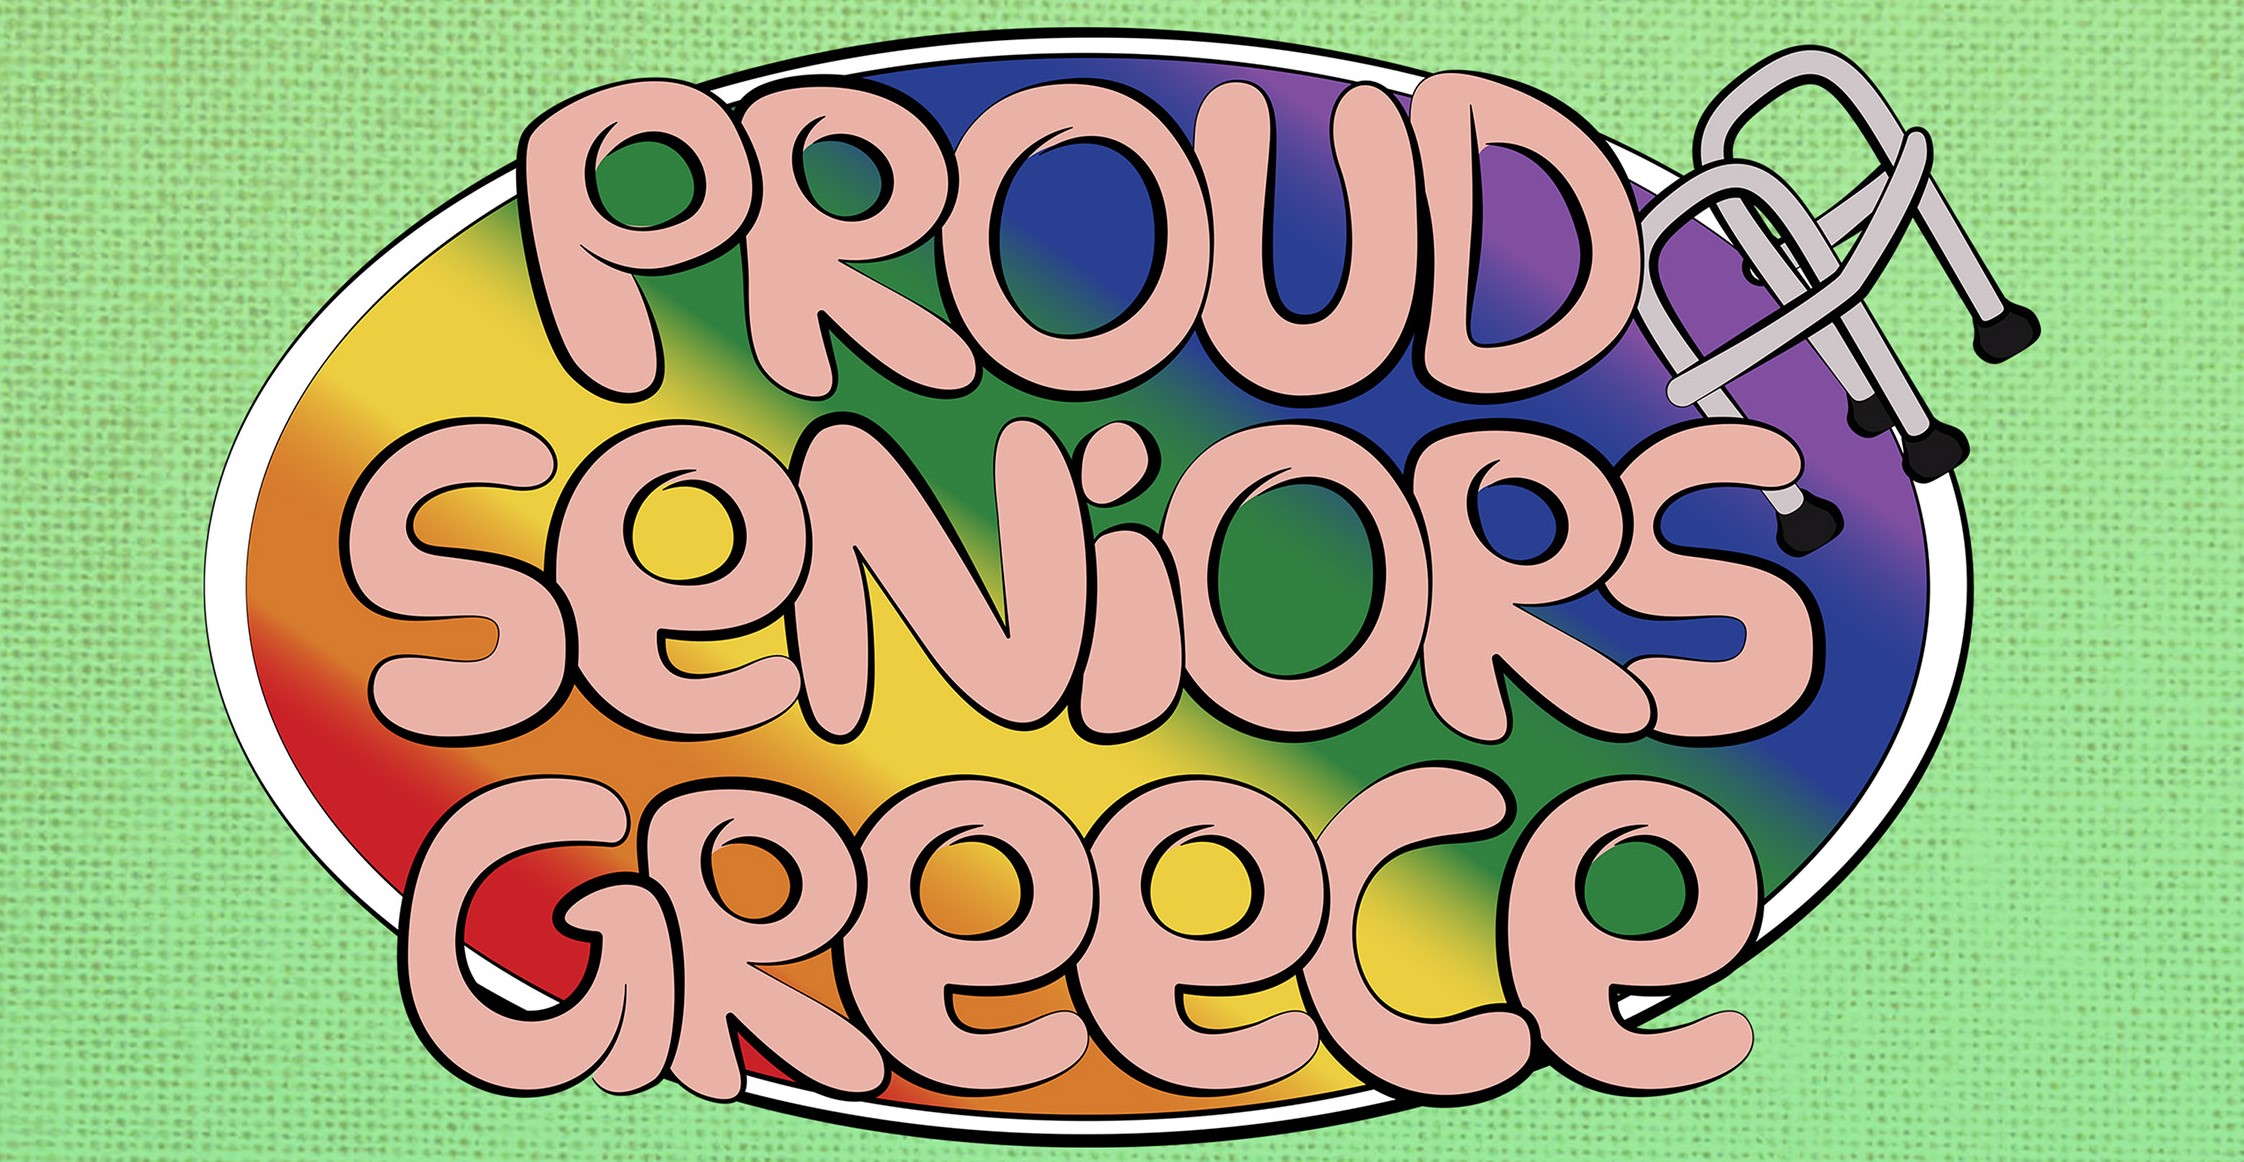 Εκδήλωση Proud Seniors Greece